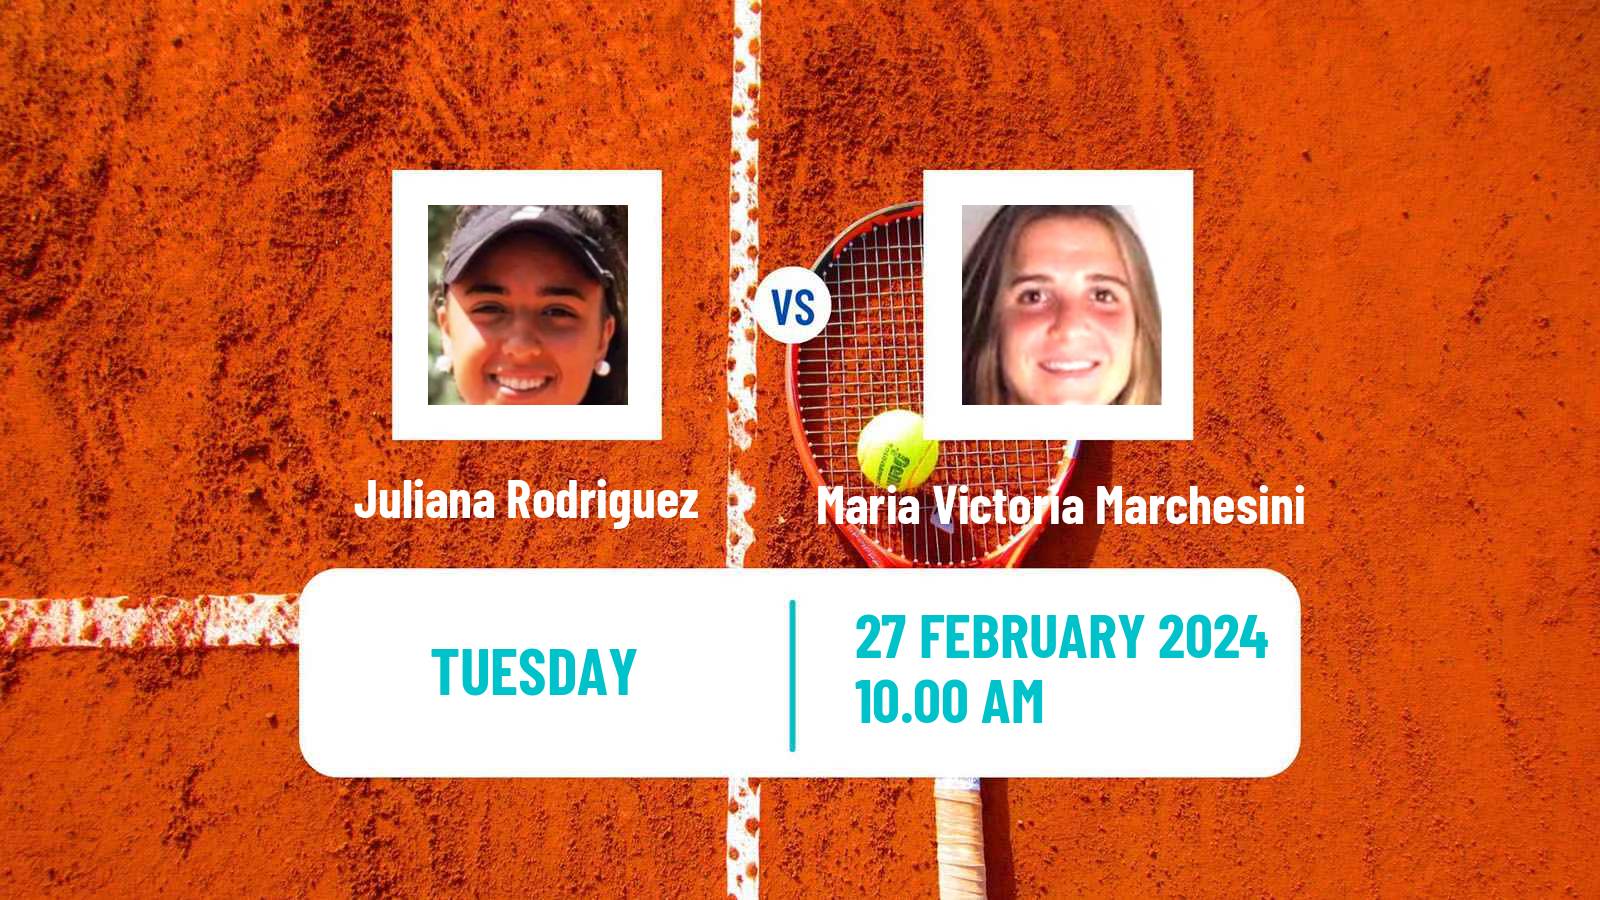 Tennis ITF W15 Tucuman Women Juliana Rodriguez - Maria Victoria Marchesini